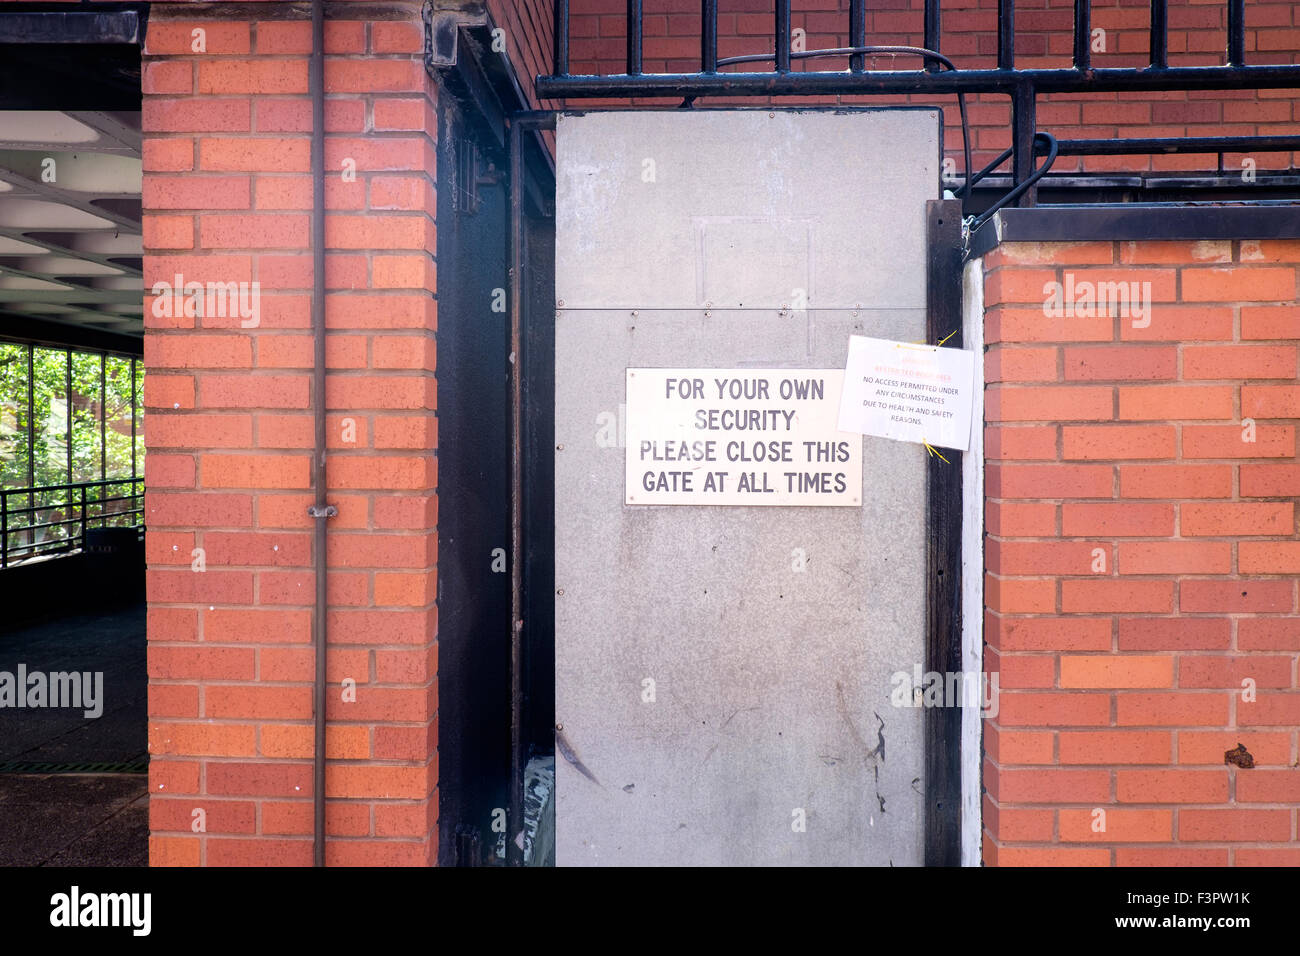 Panneau disant "pour votre propre sécurité, veuillez fermer cette porte en tout temps' dans le centre de la Cité, l'Université de Manchester, UK Banque D'Images